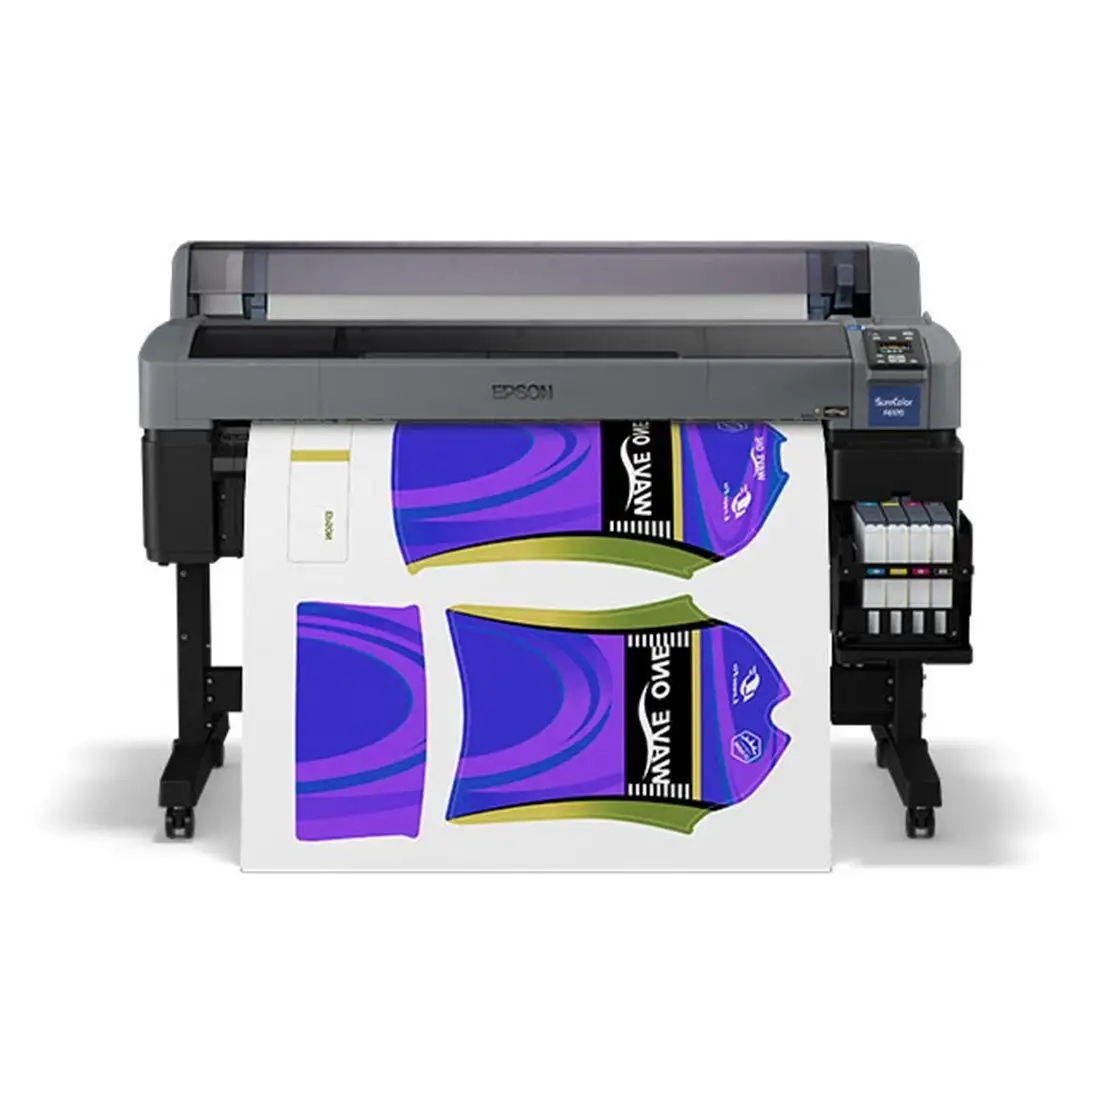 Epsons SureColor F6370 – imprimante à Sublimation à colorant grand Format 44 pouces (édition Standard), originale, nouvelle collection